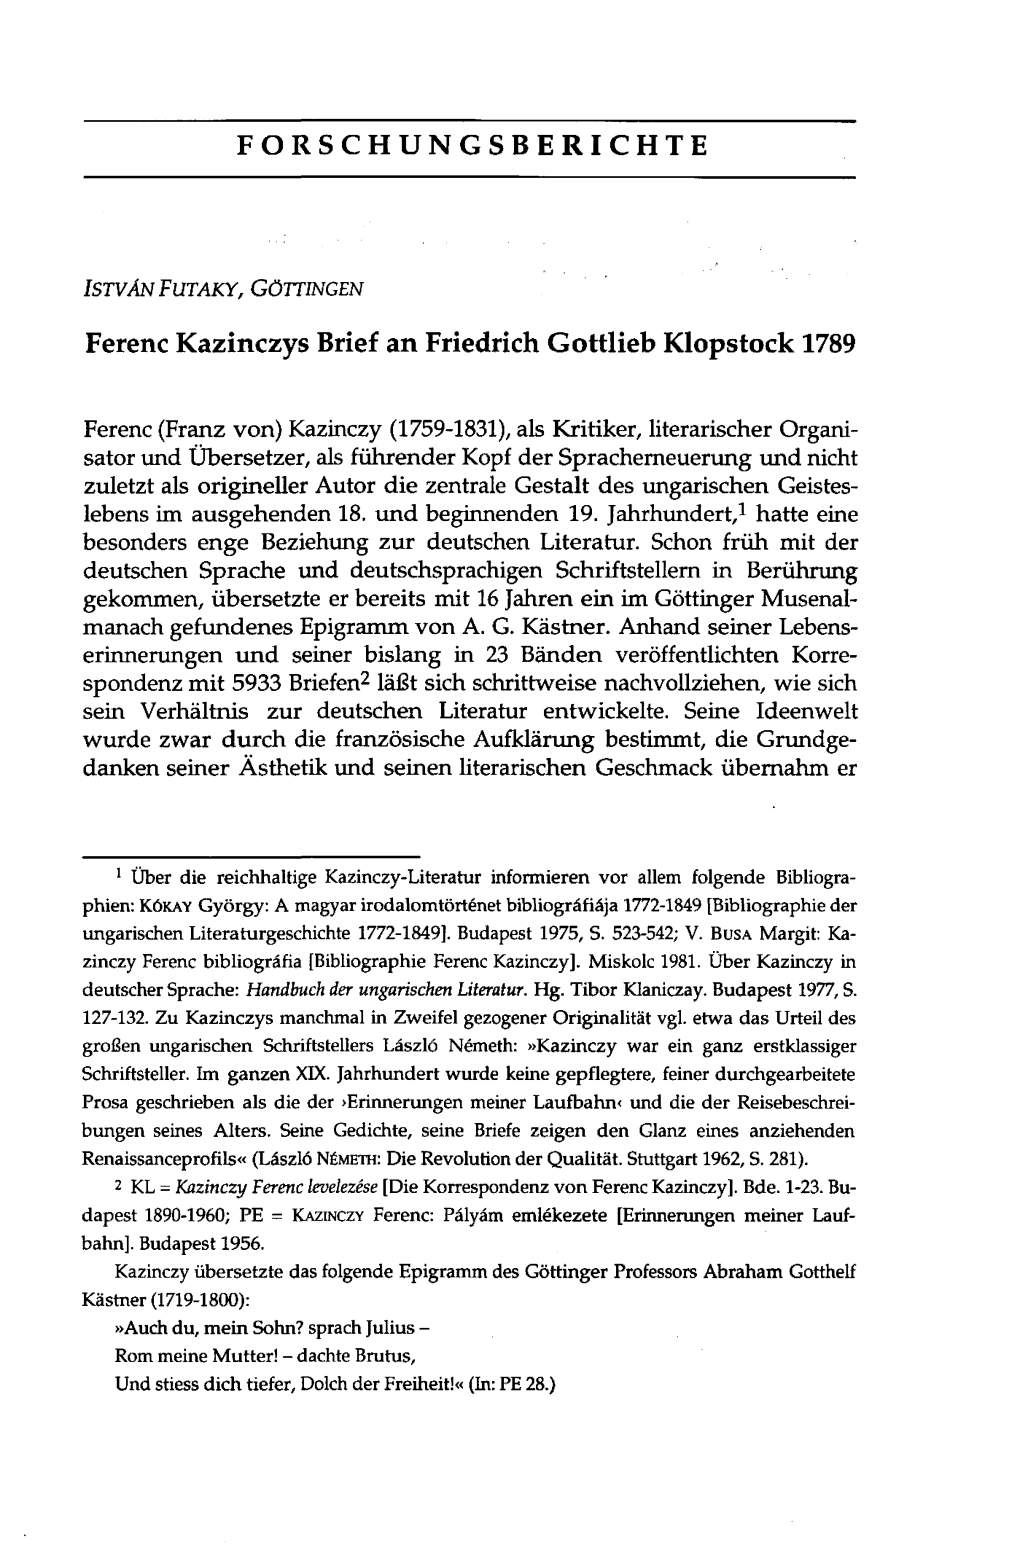 Ferenc Kazinczys Brief an Friedrich Gottlieb Klopstock 1789